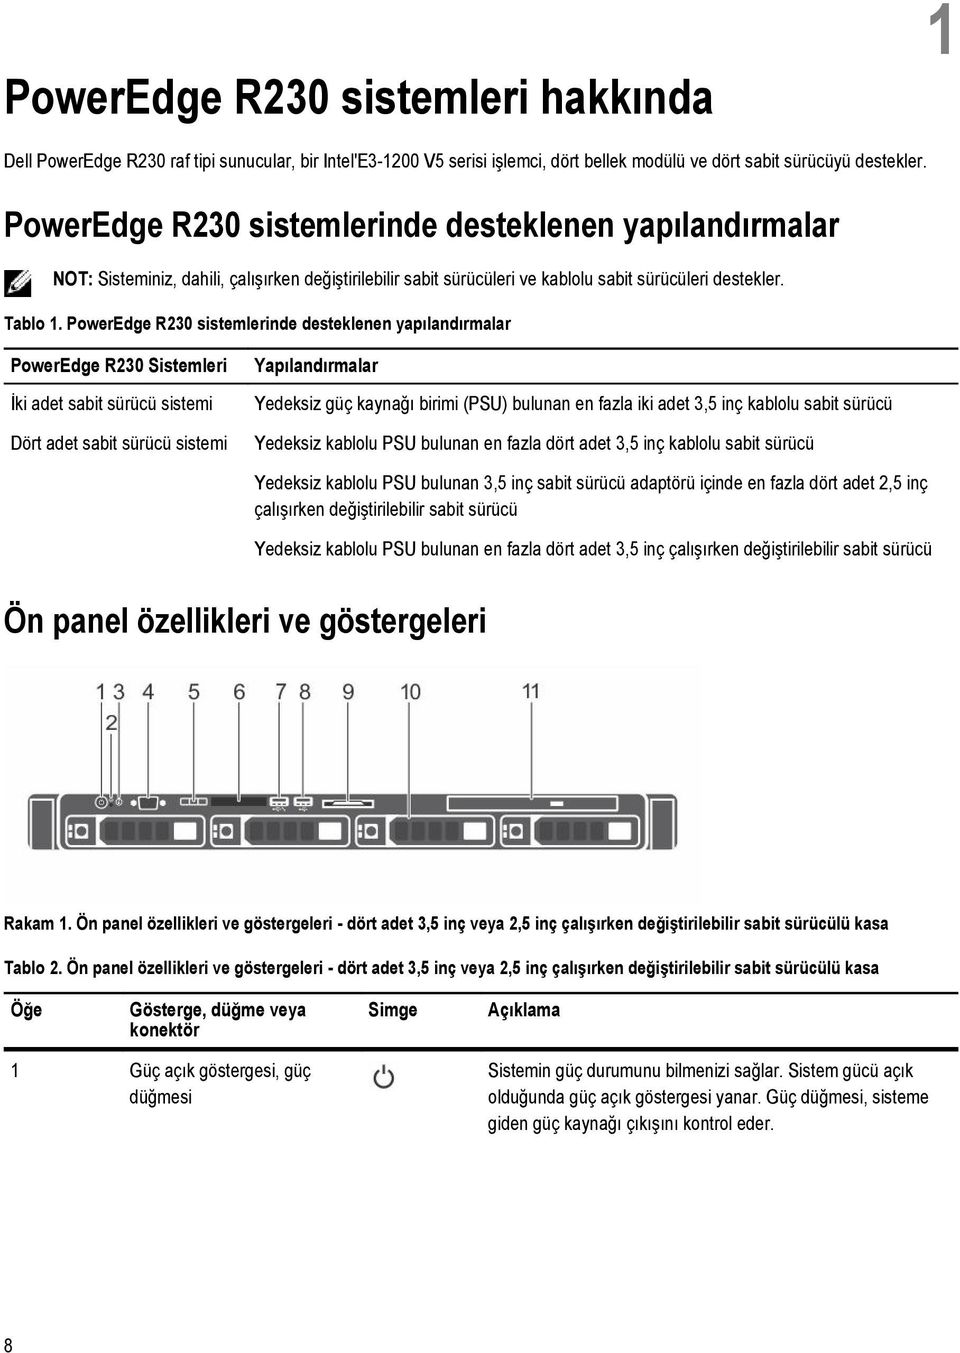 PowerEdge R230 sistemlerinde desteklenen yapılandırmalar PowerEdge R230 Sistemleri İki adet sabit sürücü sistemi Dört adet sabit sürücü sistemi Yapılandırmalar Yedeksiz güç kaynağı birimi (PSU)